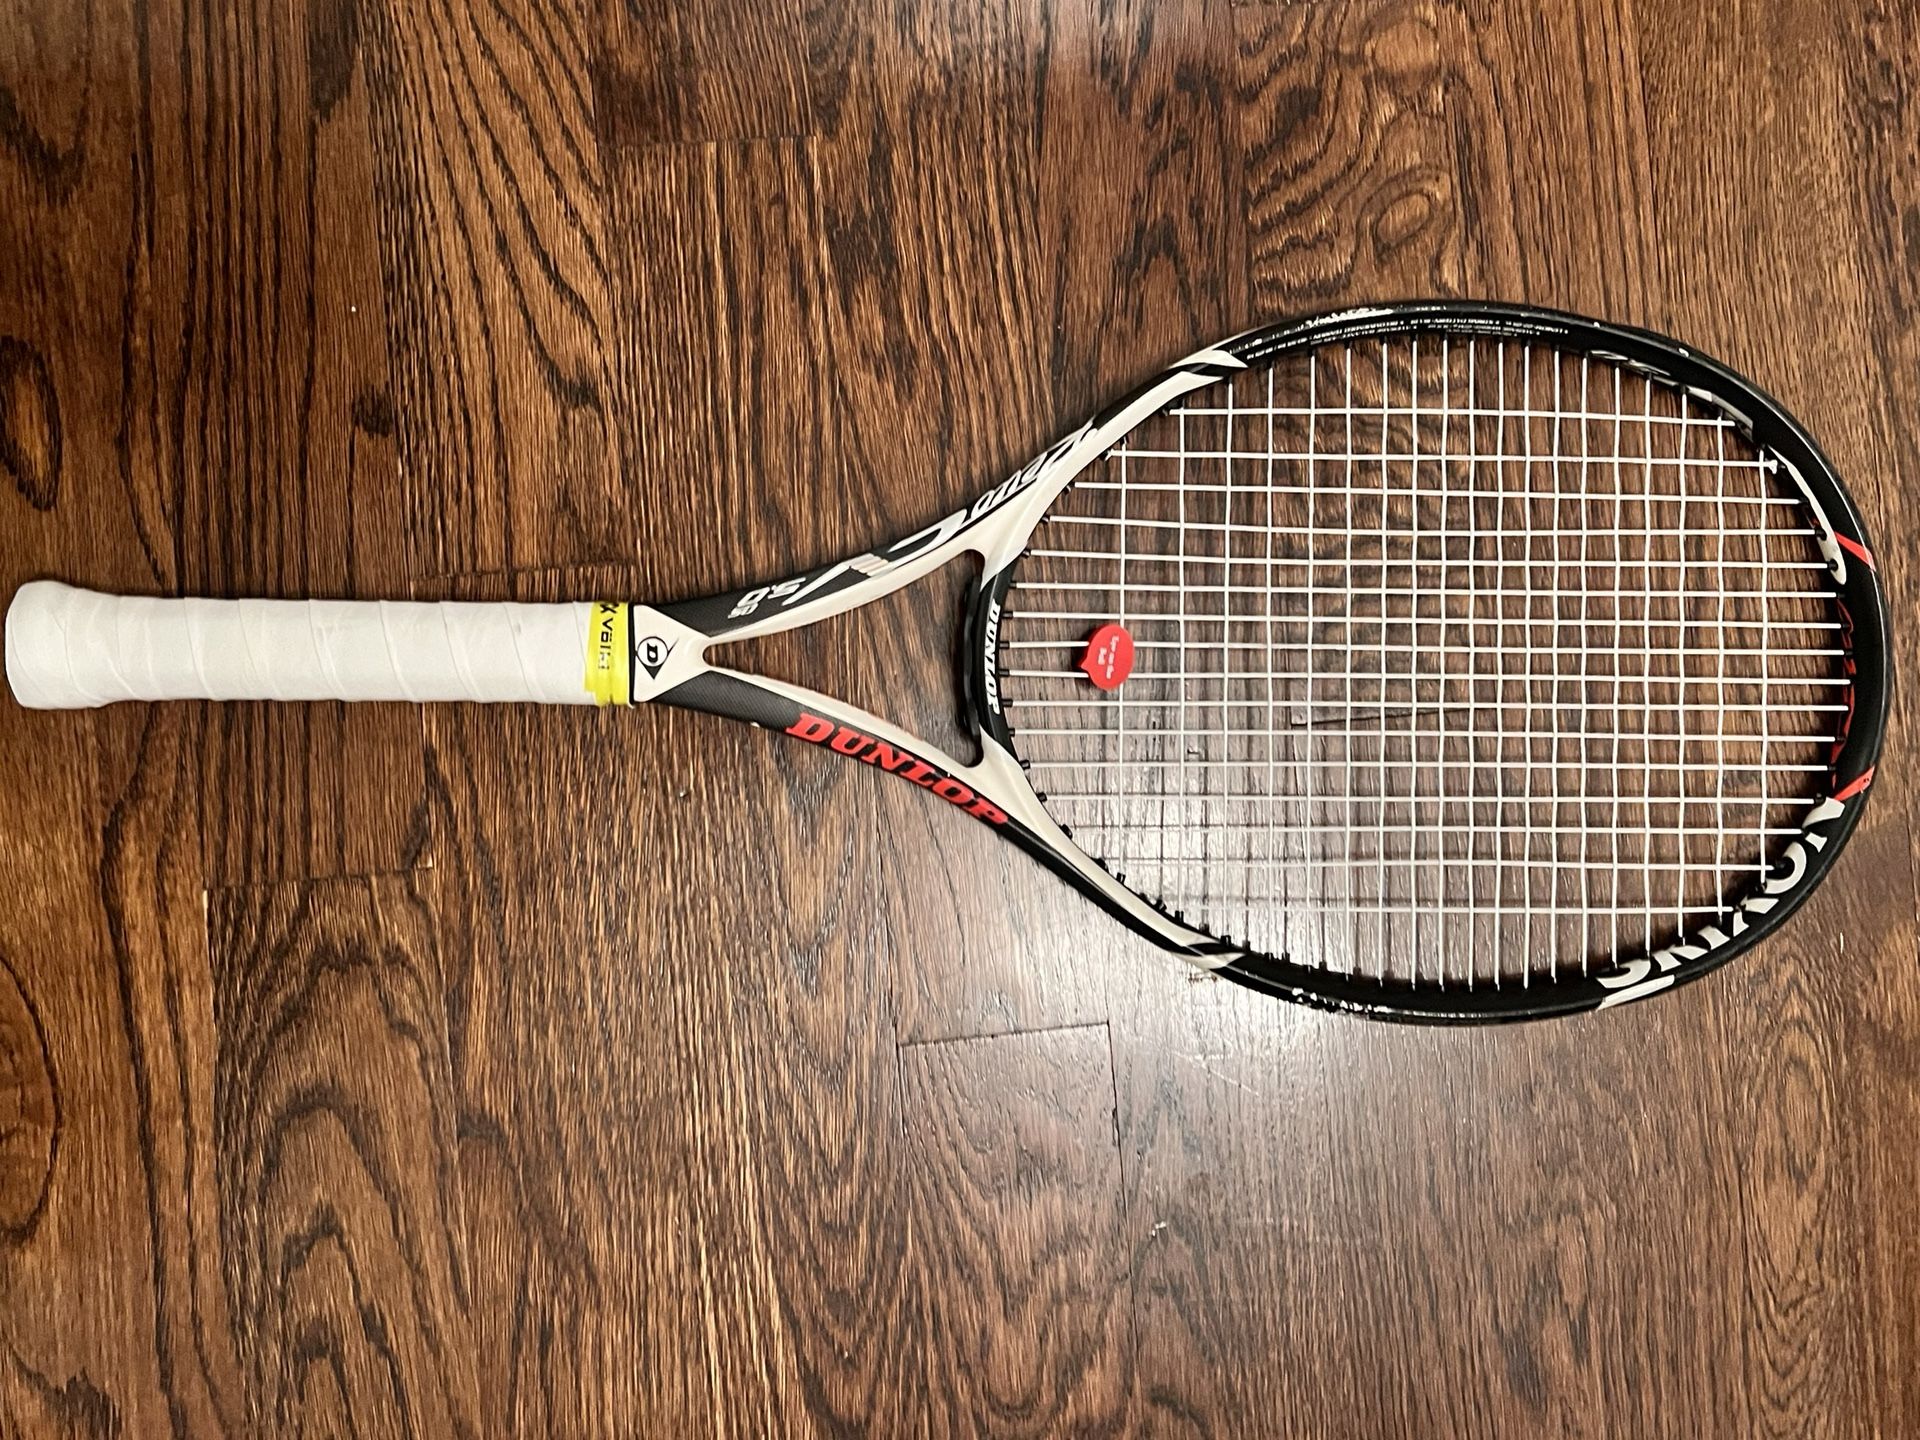 DUNLOP Srixon Revo CV 5.0 OS Tennis Racquet Racket. Grip Size 4 1/4